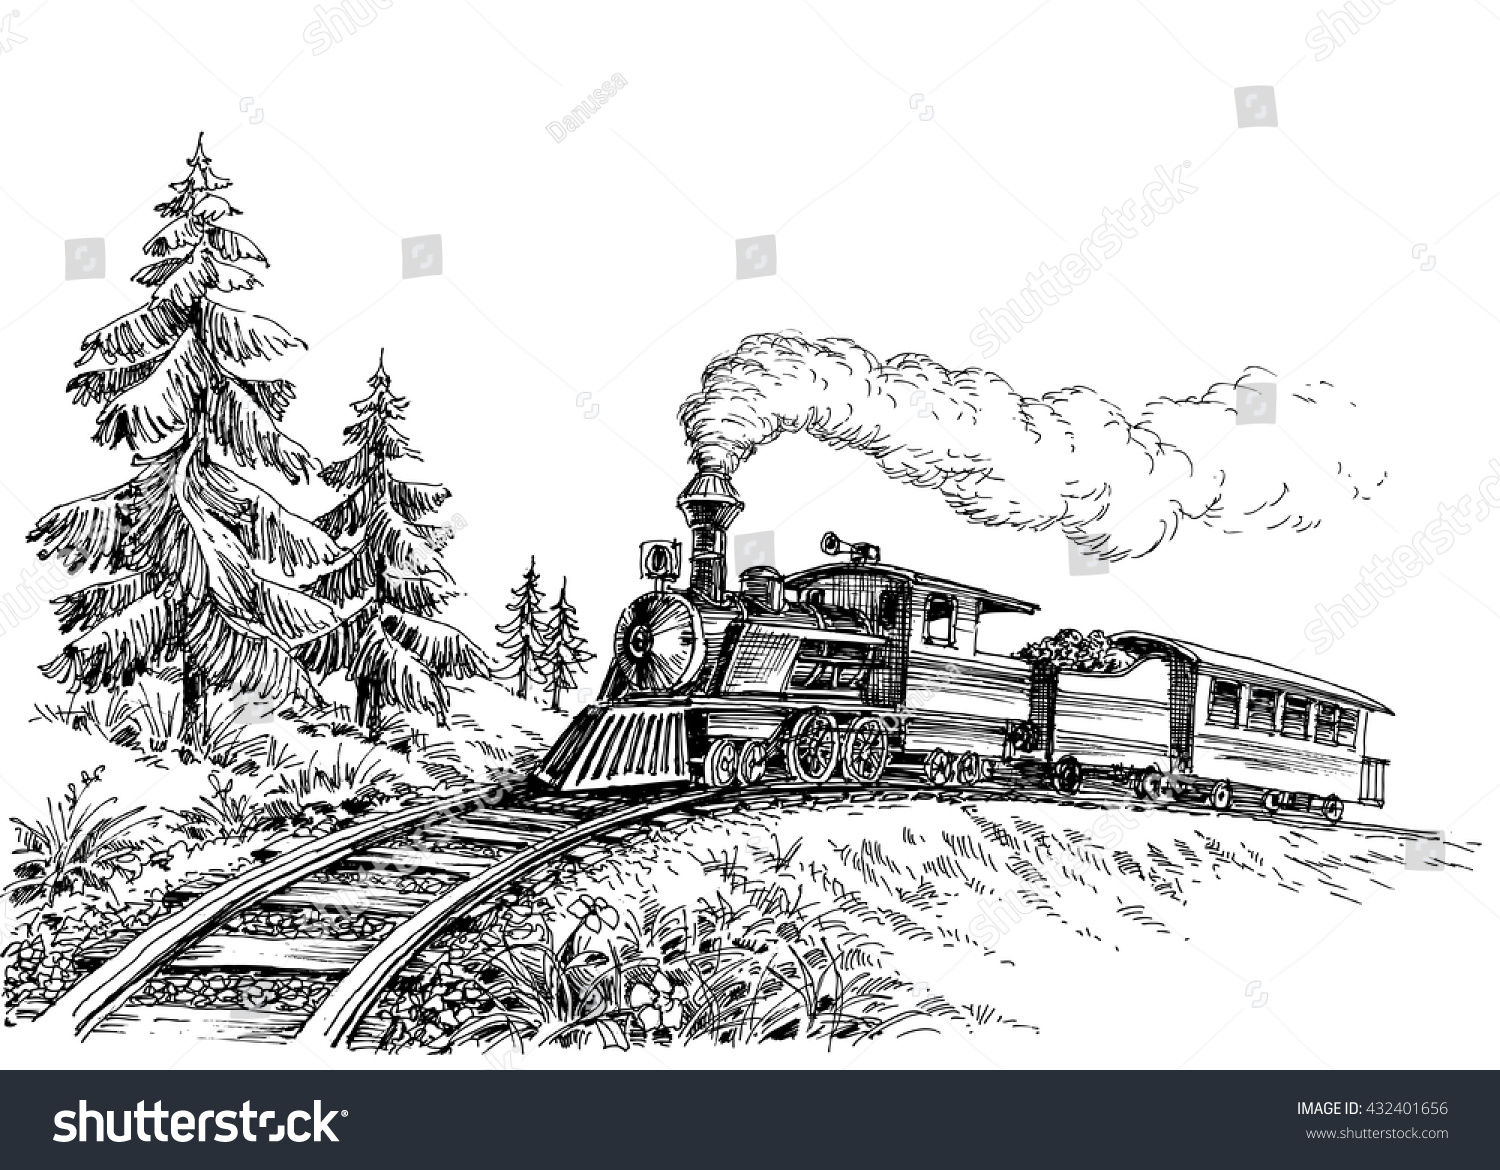 Поезд с рельсами